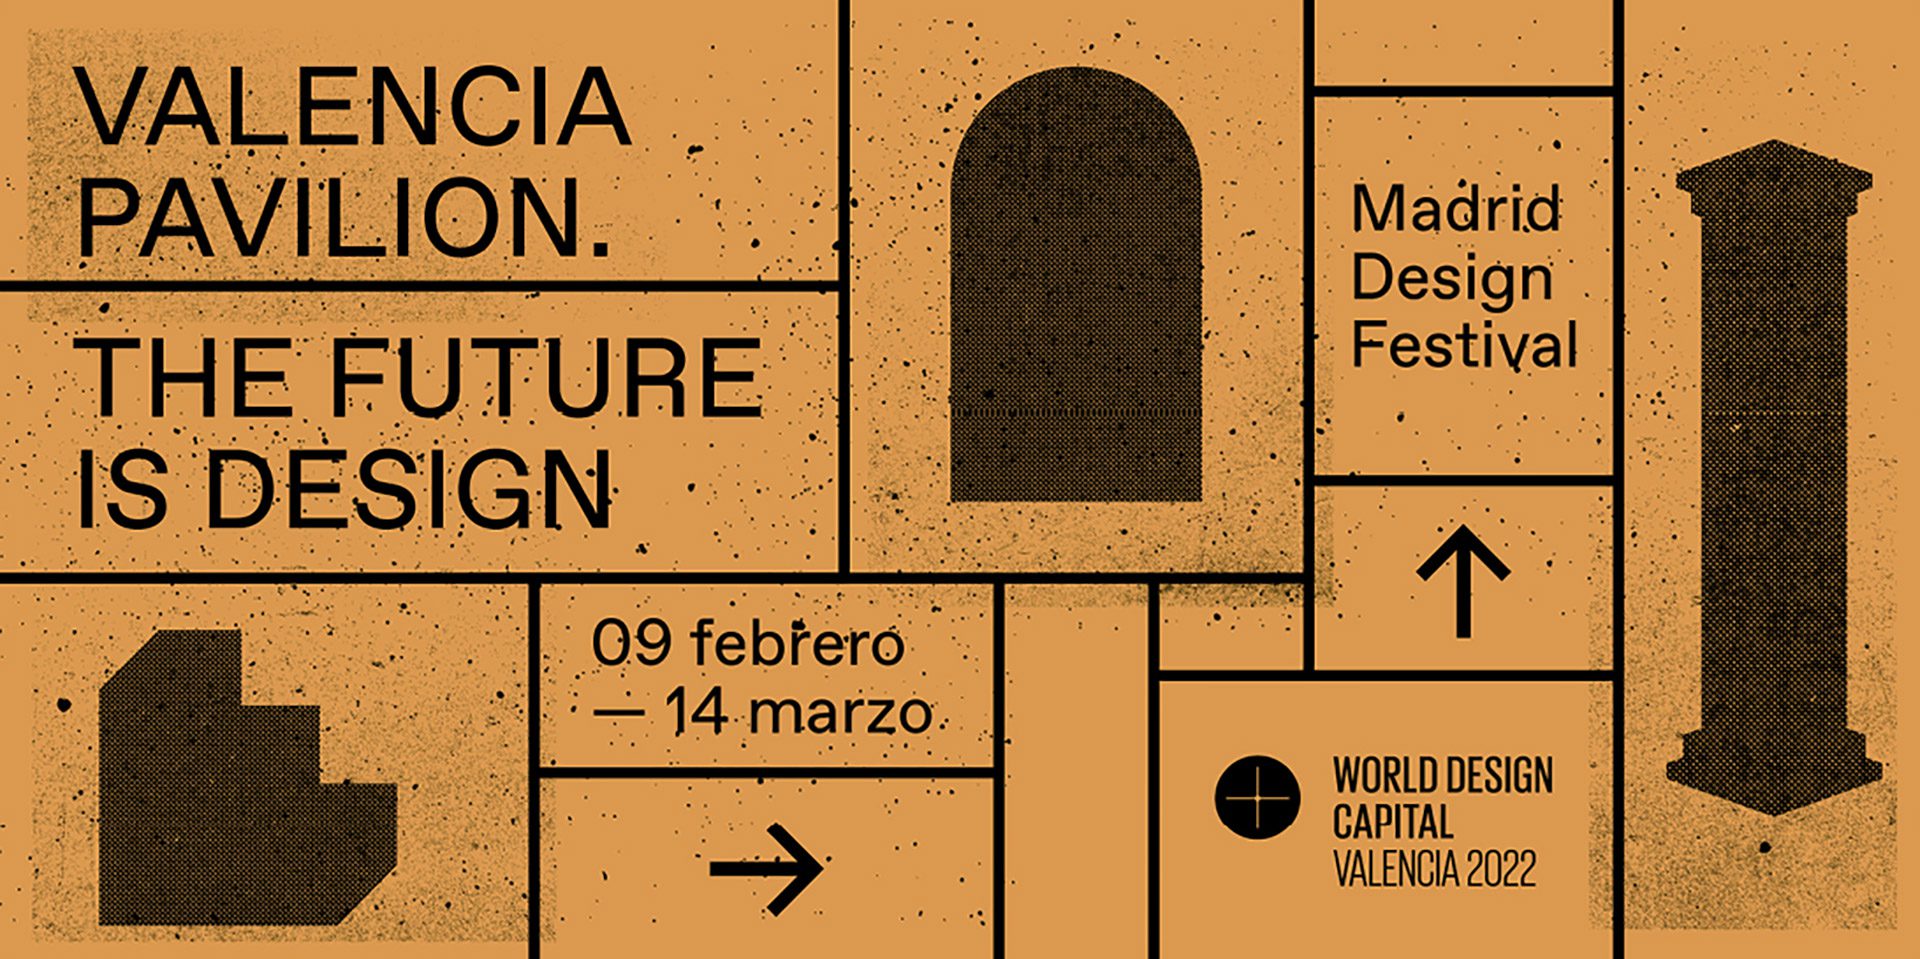 Vondom at the 2021 Madrid Design Festival